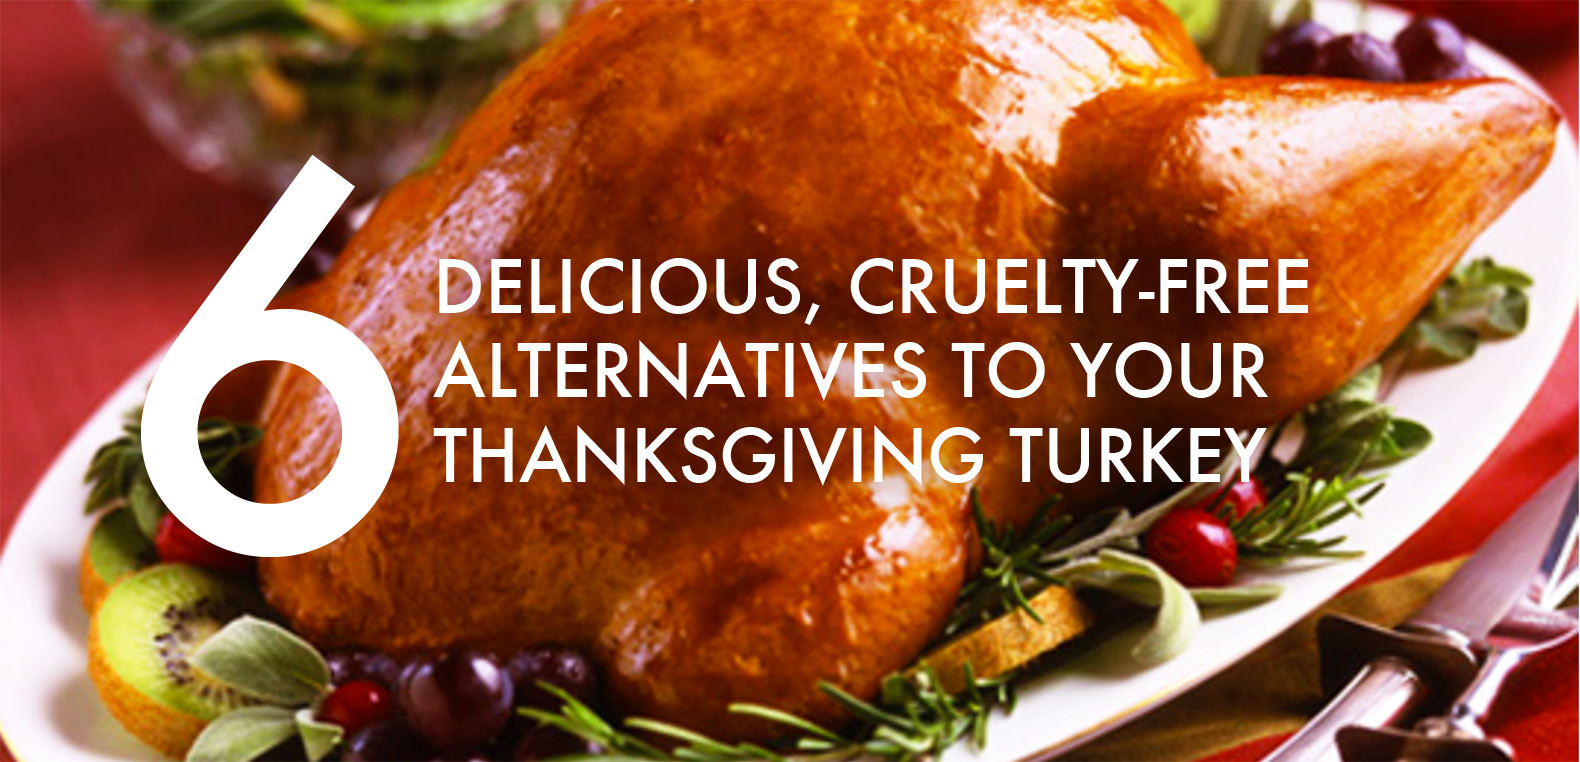 Thanksgiving Turkey Alternatives
 6 Vegan and ve arian turkey alternatives for